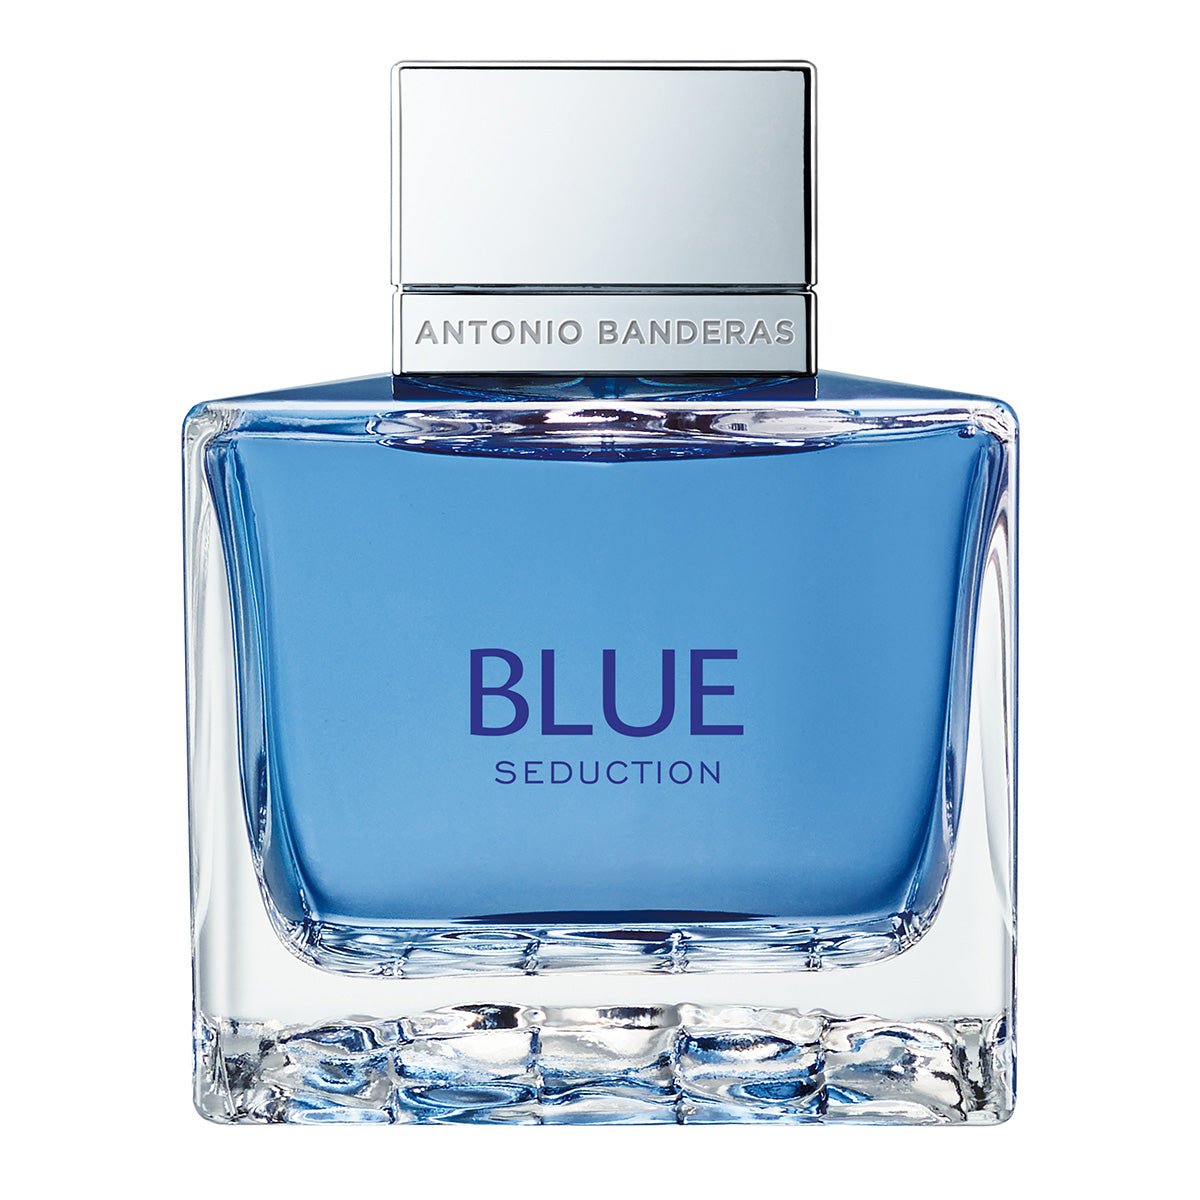 Antonio Banderas Blue Seduction Perfume For Men Eau De Toilette 100ml - AllurebeautypkAntonio Banderas Blue Seduction Perfume For Men Eau De Toilette 100ml